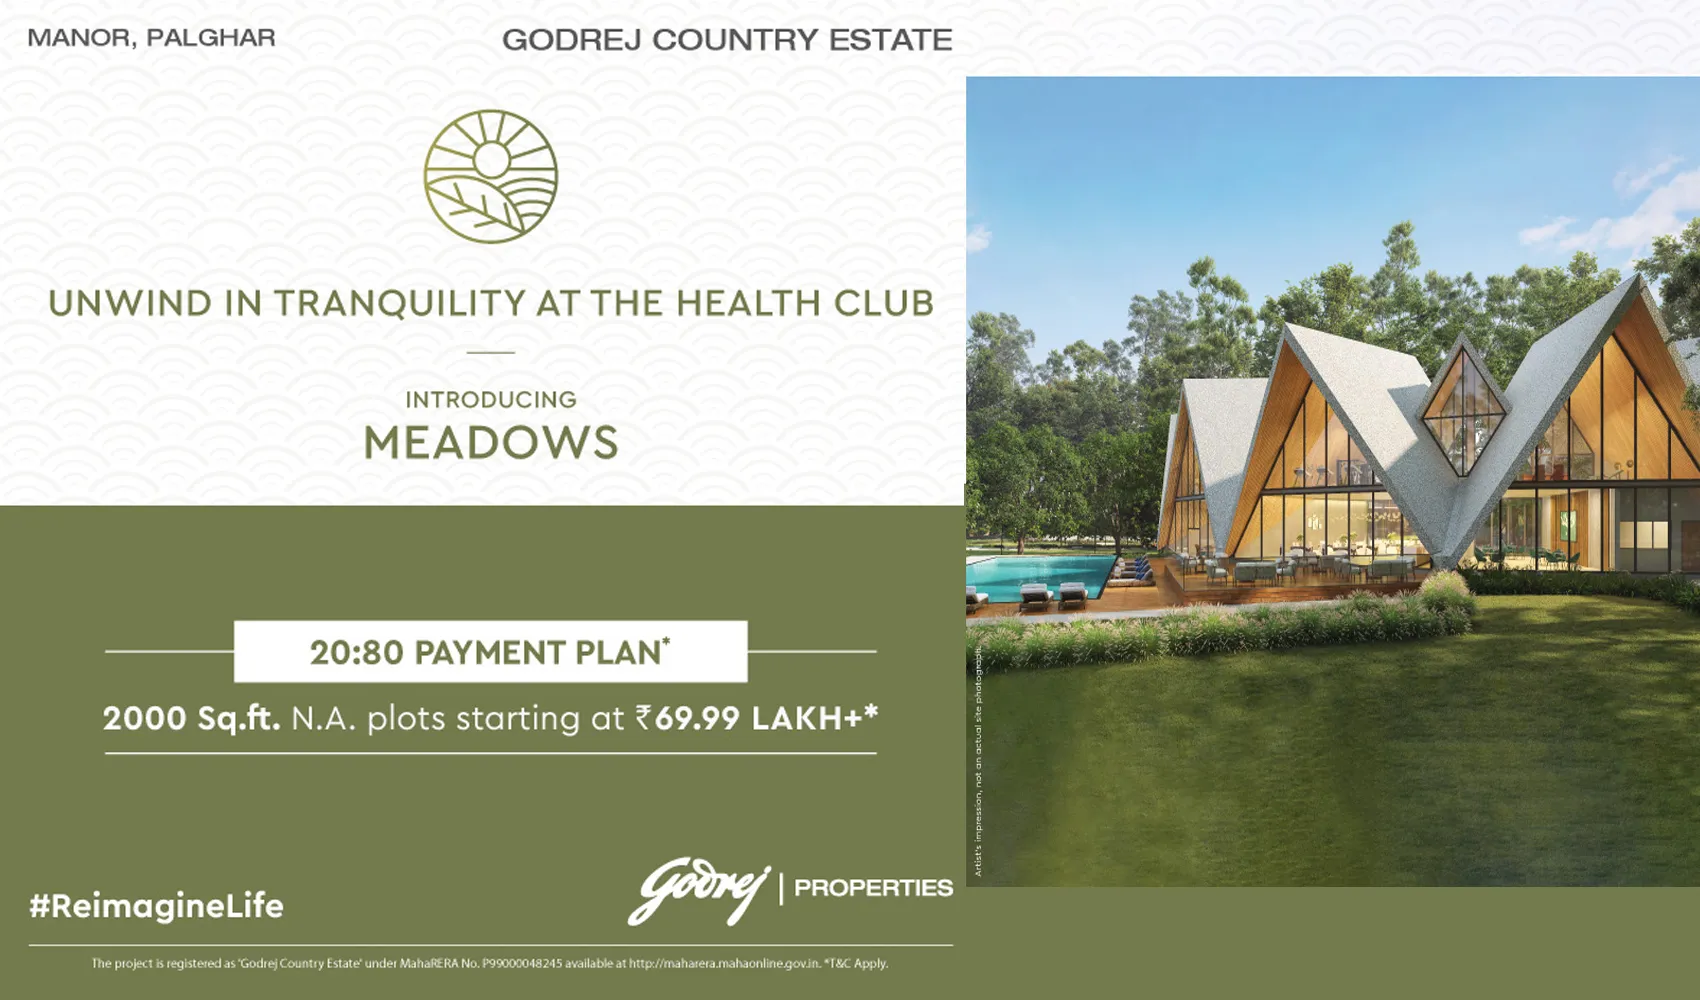 Godrej Country Estate Manor